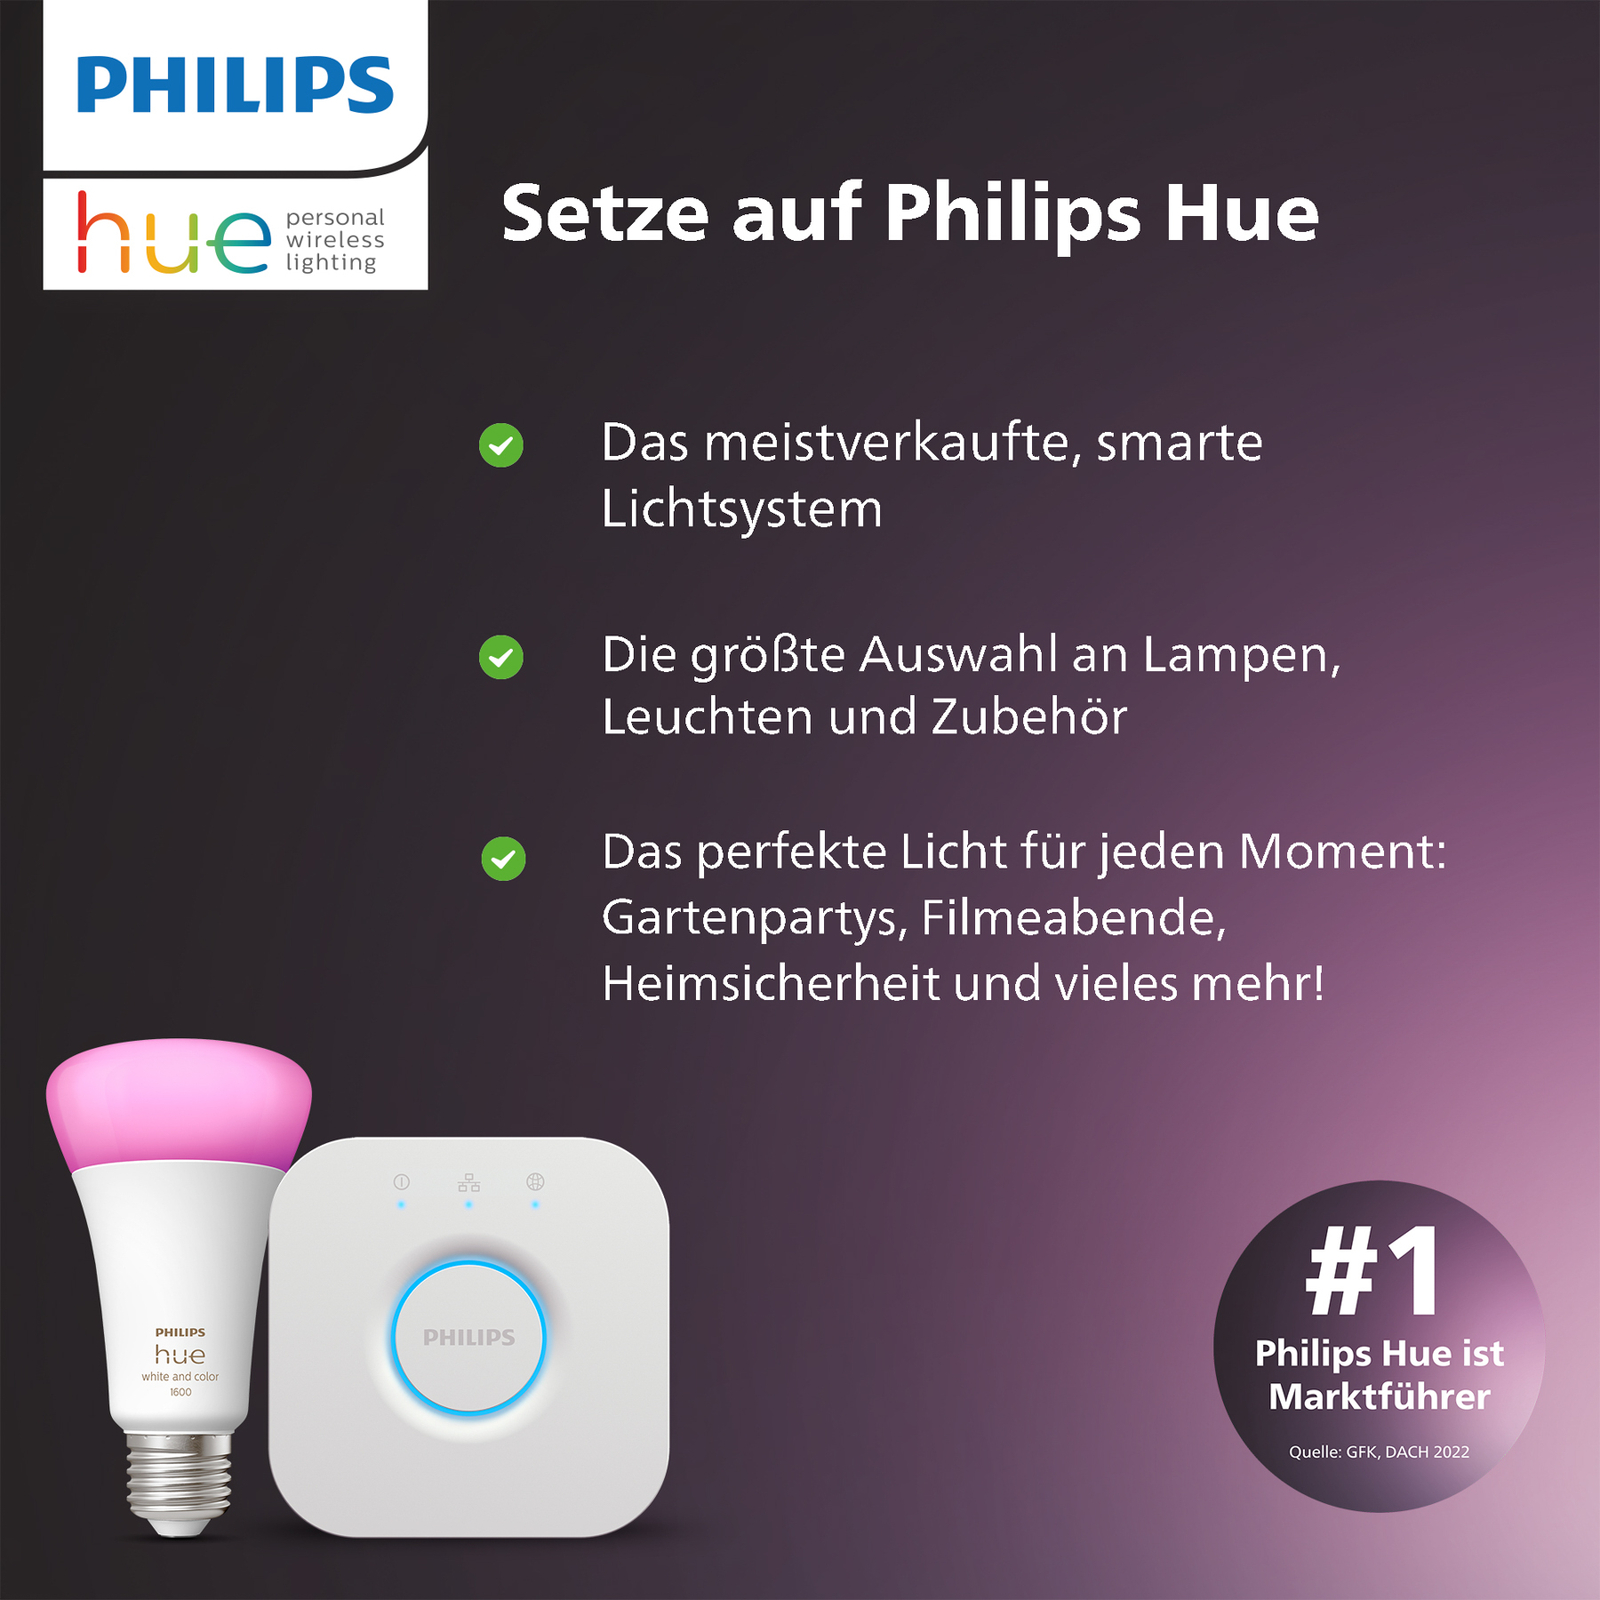 Philips Hue White Ambiance E27 LED-pære 8W 1100lm